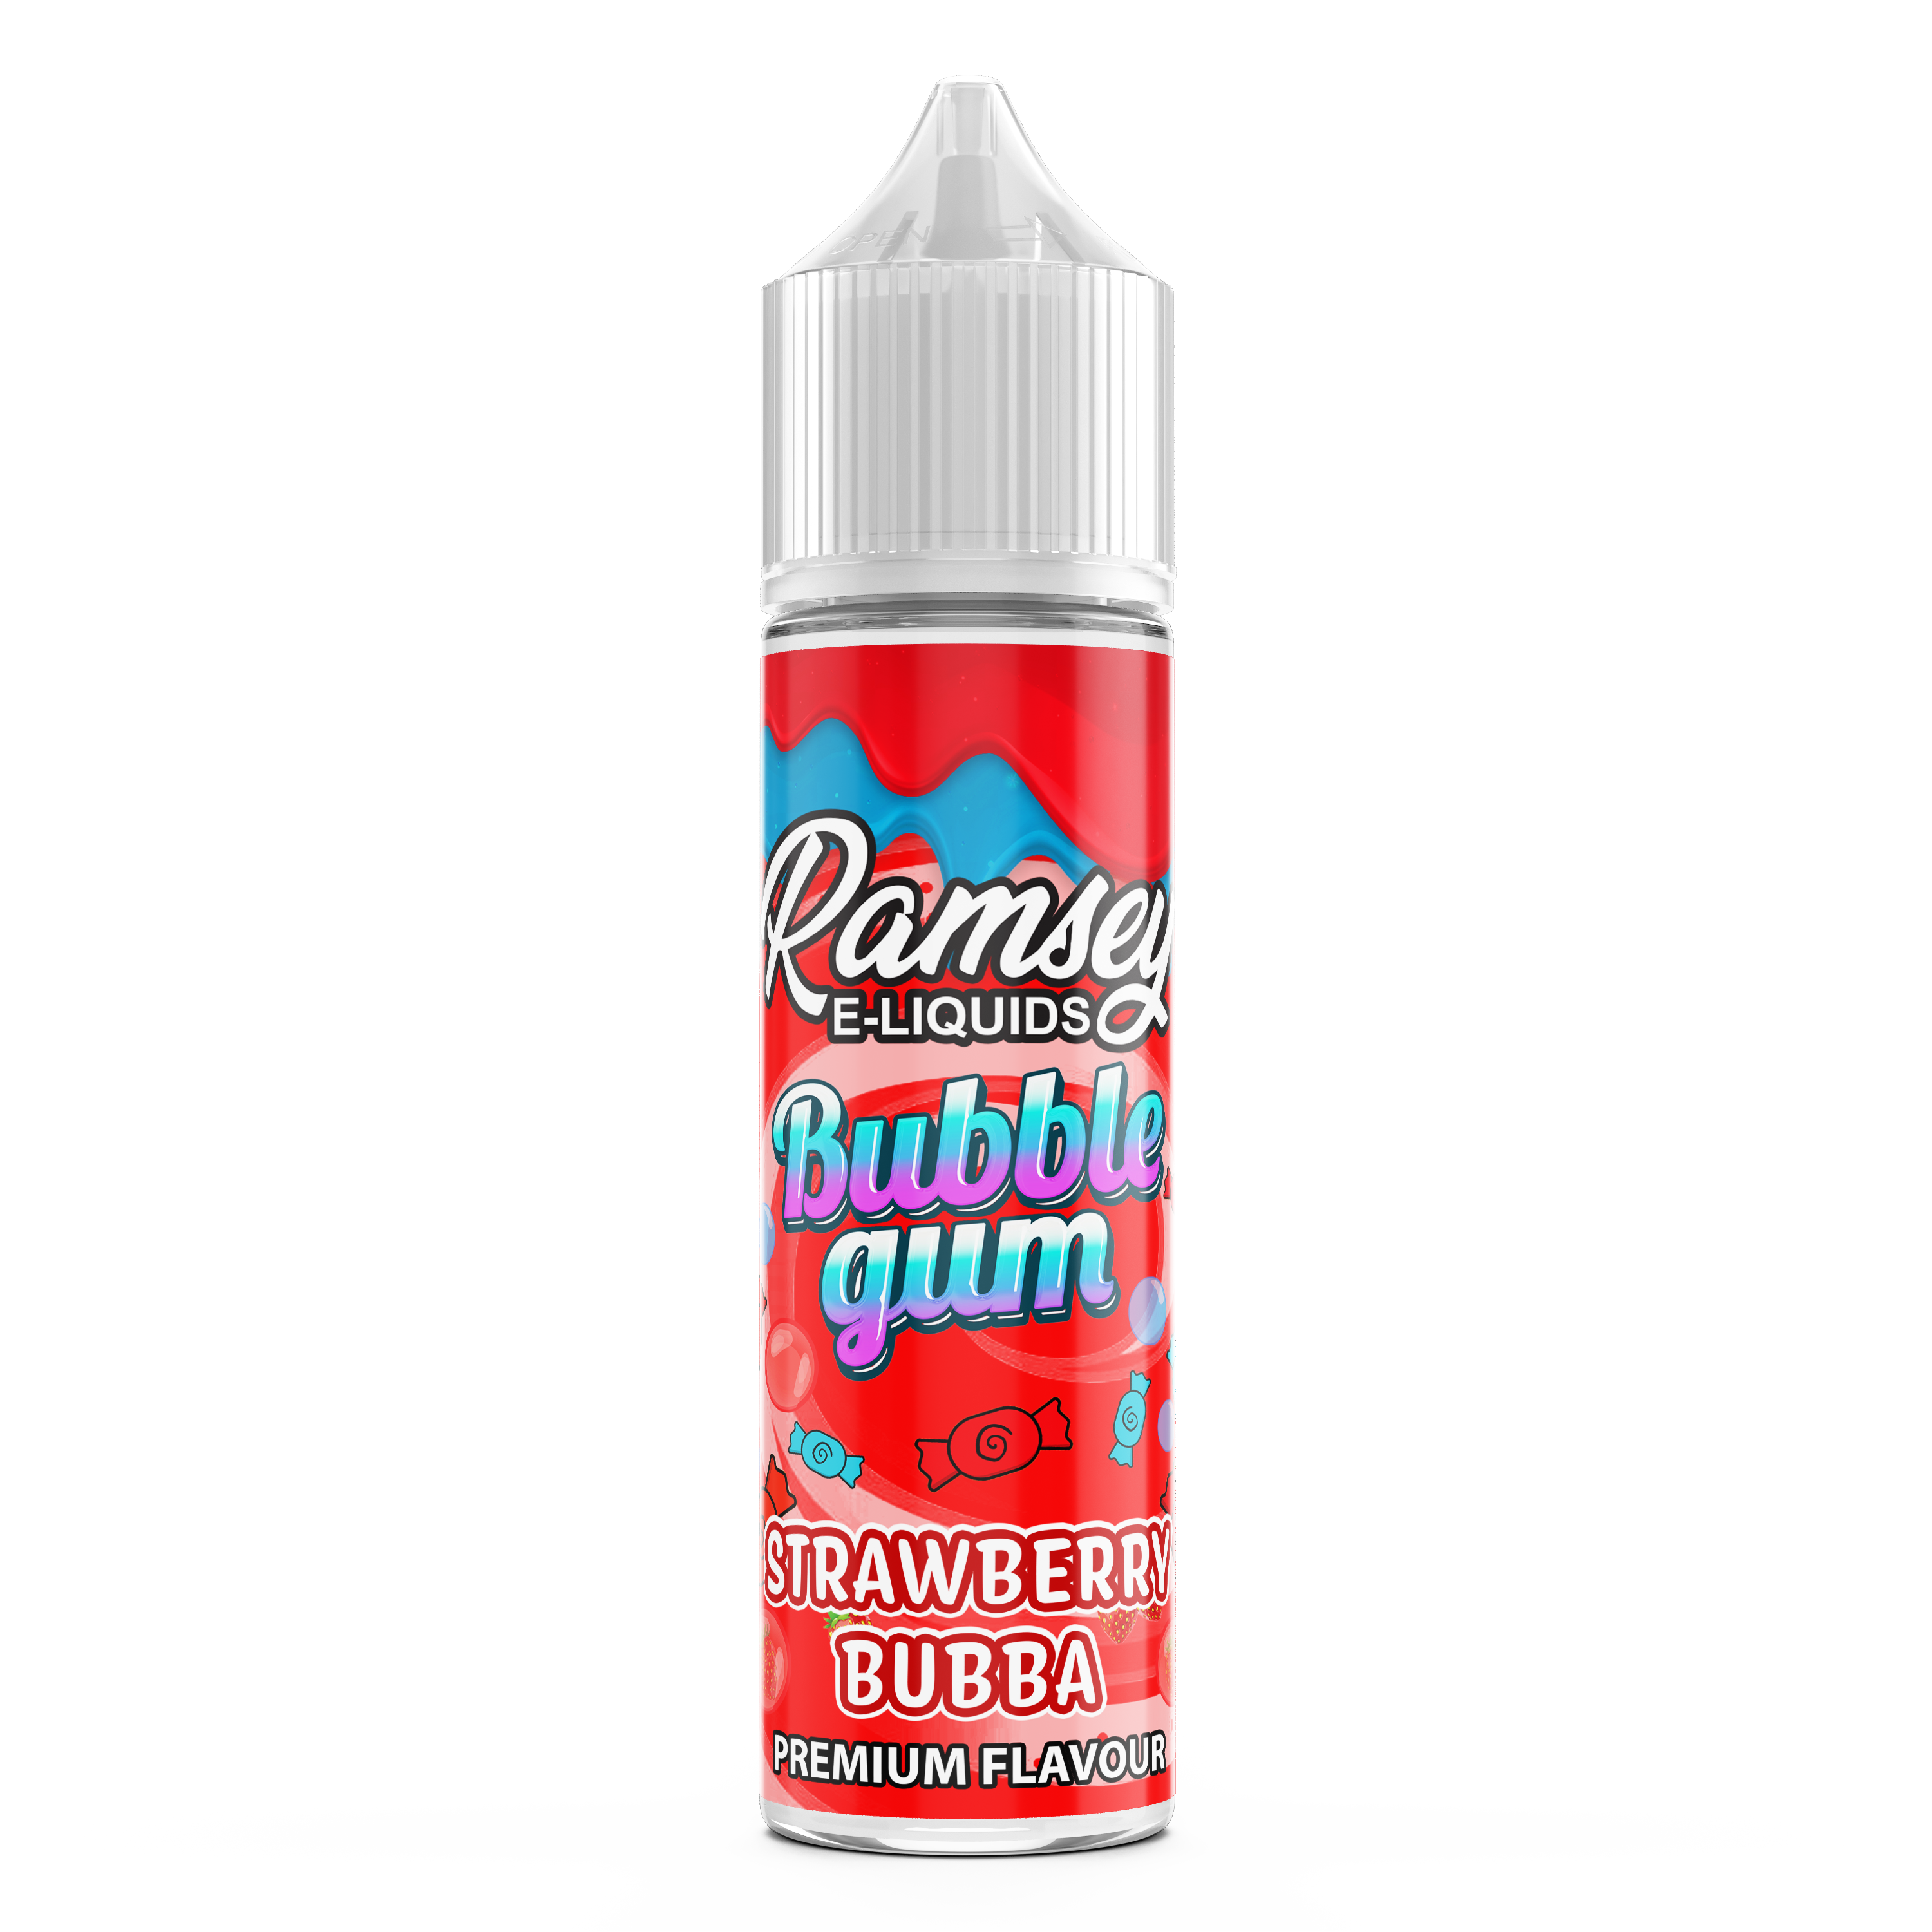 Ramsey E-Liquids Bubblegum: Strawberry Bubba 0mg 50ml Shortfill E-Liquid